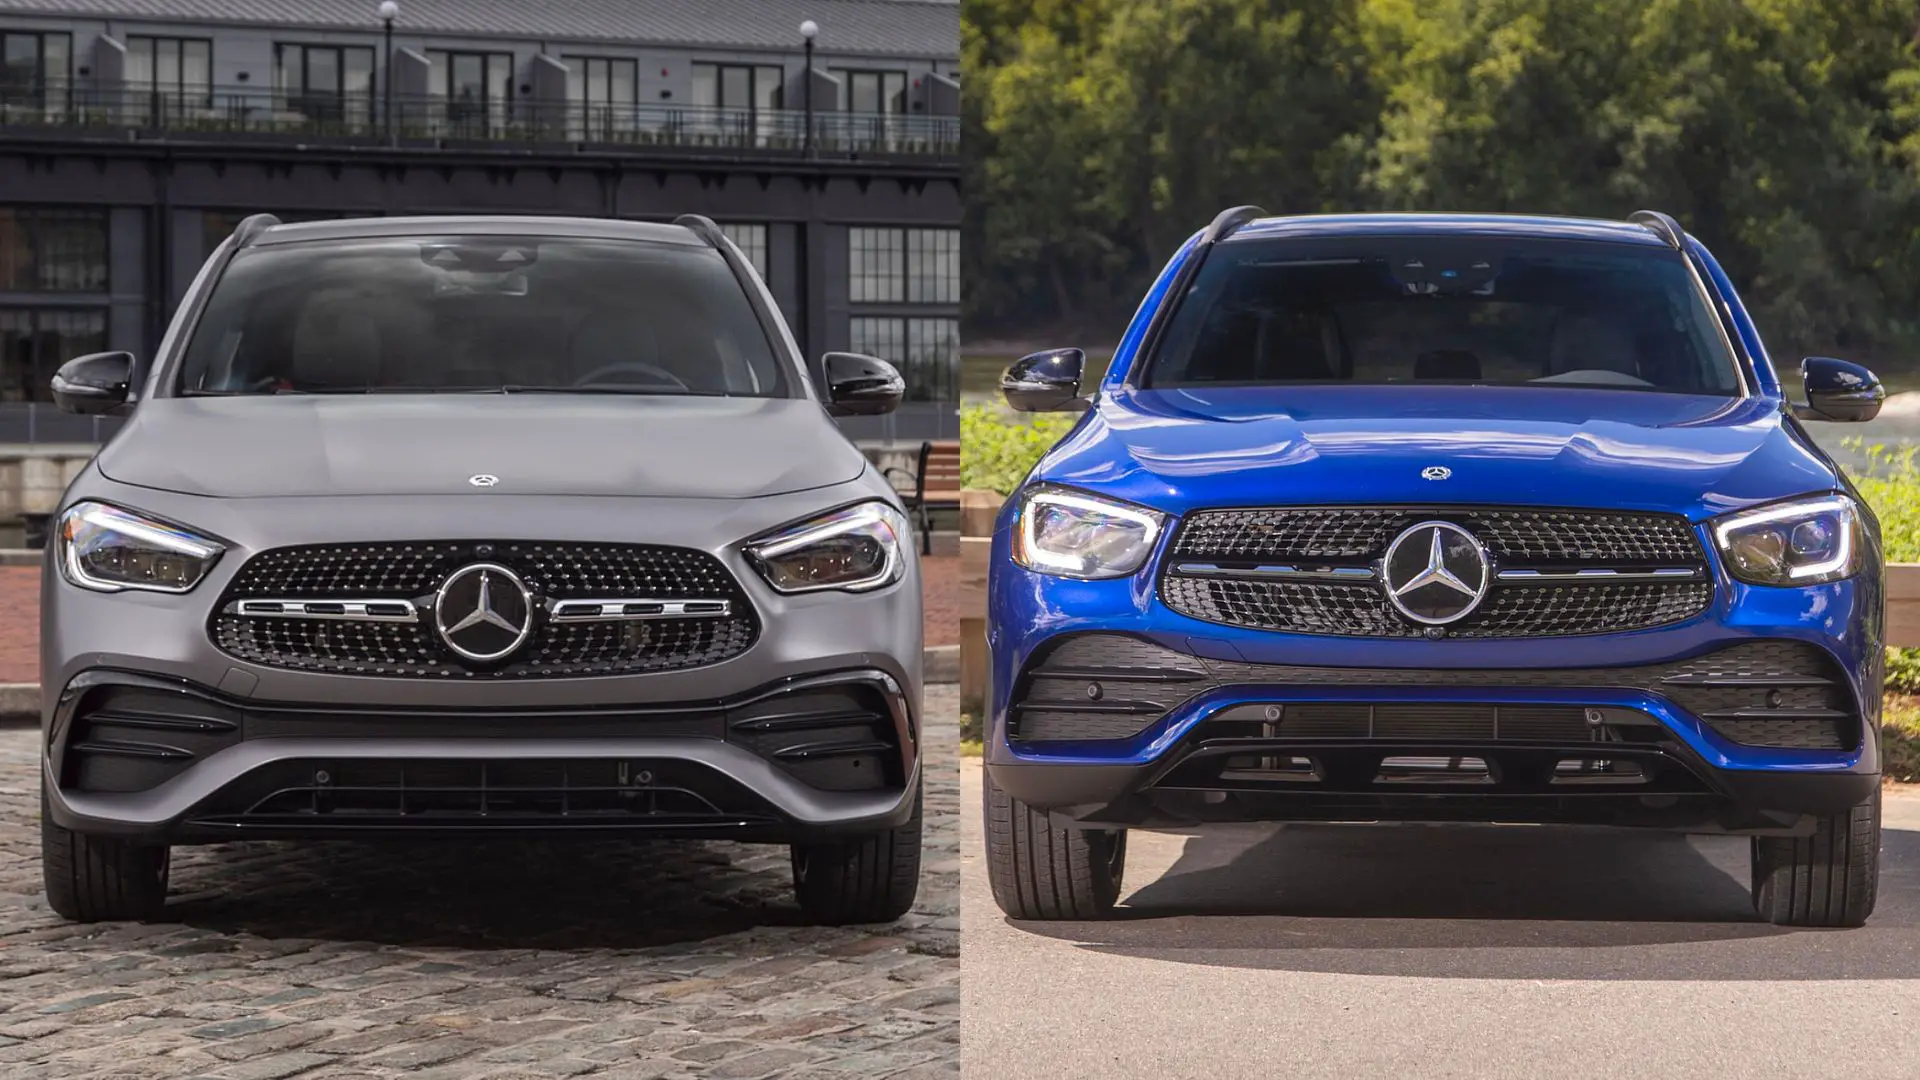 Mercedes-Benz GLA vs GLC comparison